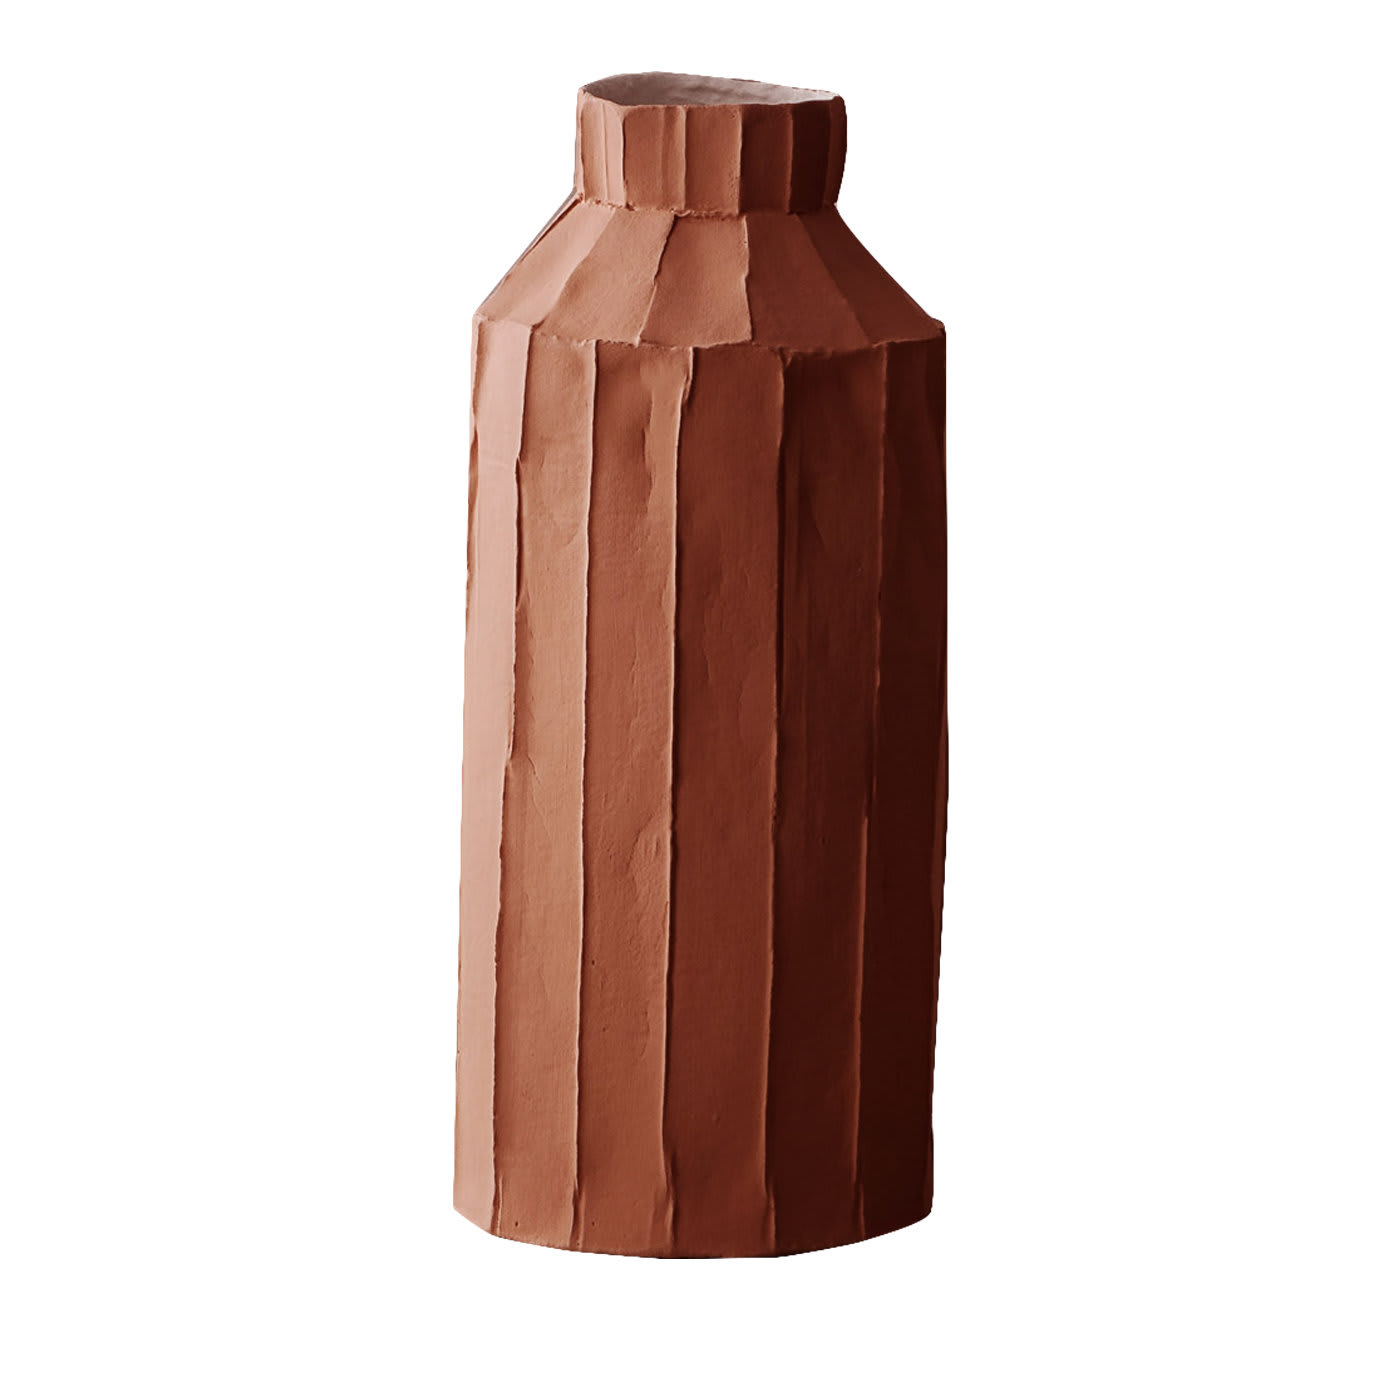 Cartocci Corteccia Fide Brown Vase - Paola Paronetto